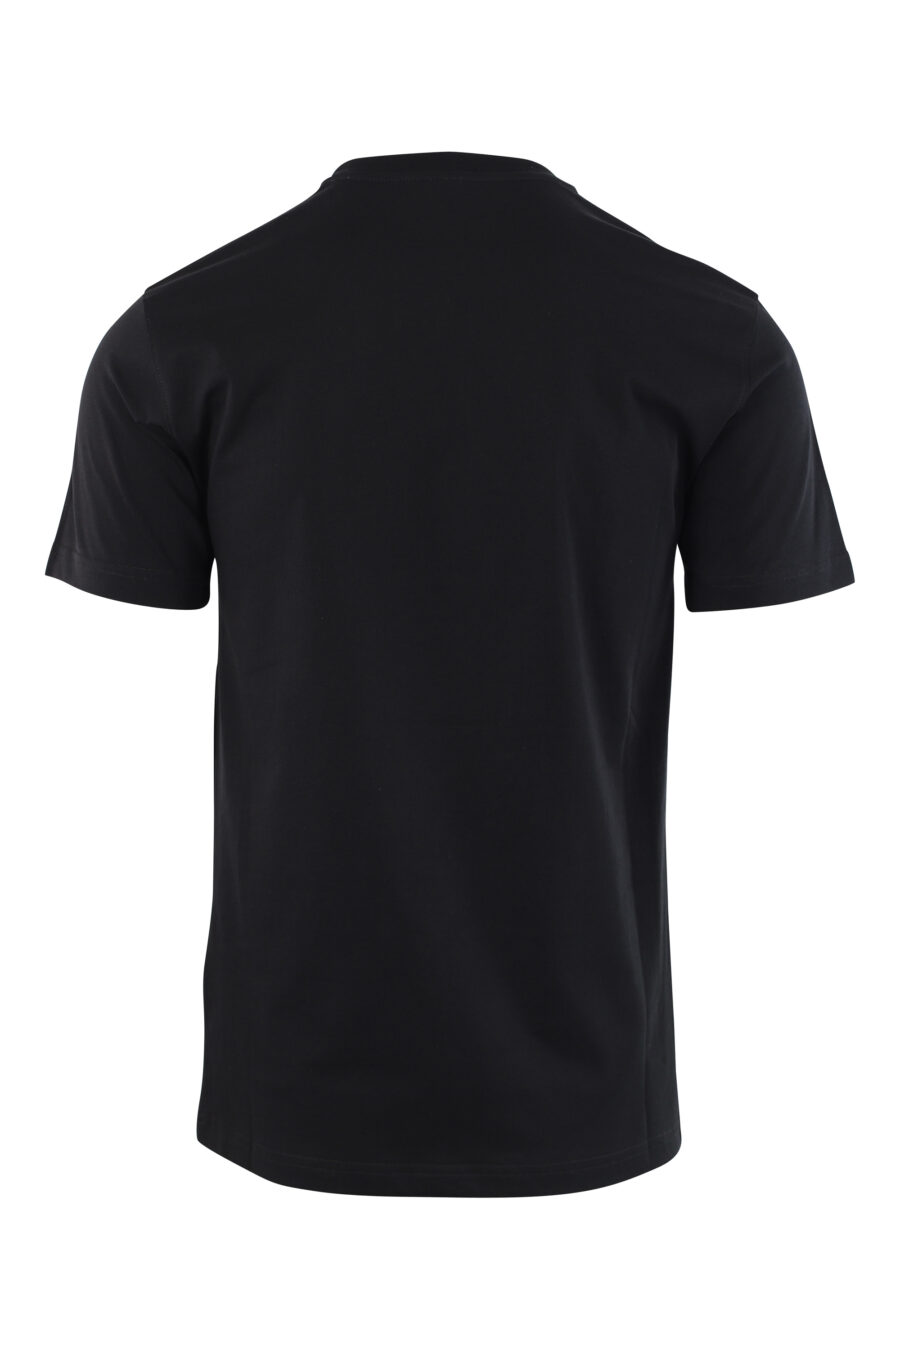 Schwarzes T-Shirt mit Maxilogo-Bär "Dies ist kein Moschino-Spielzeug" - IMG 3788